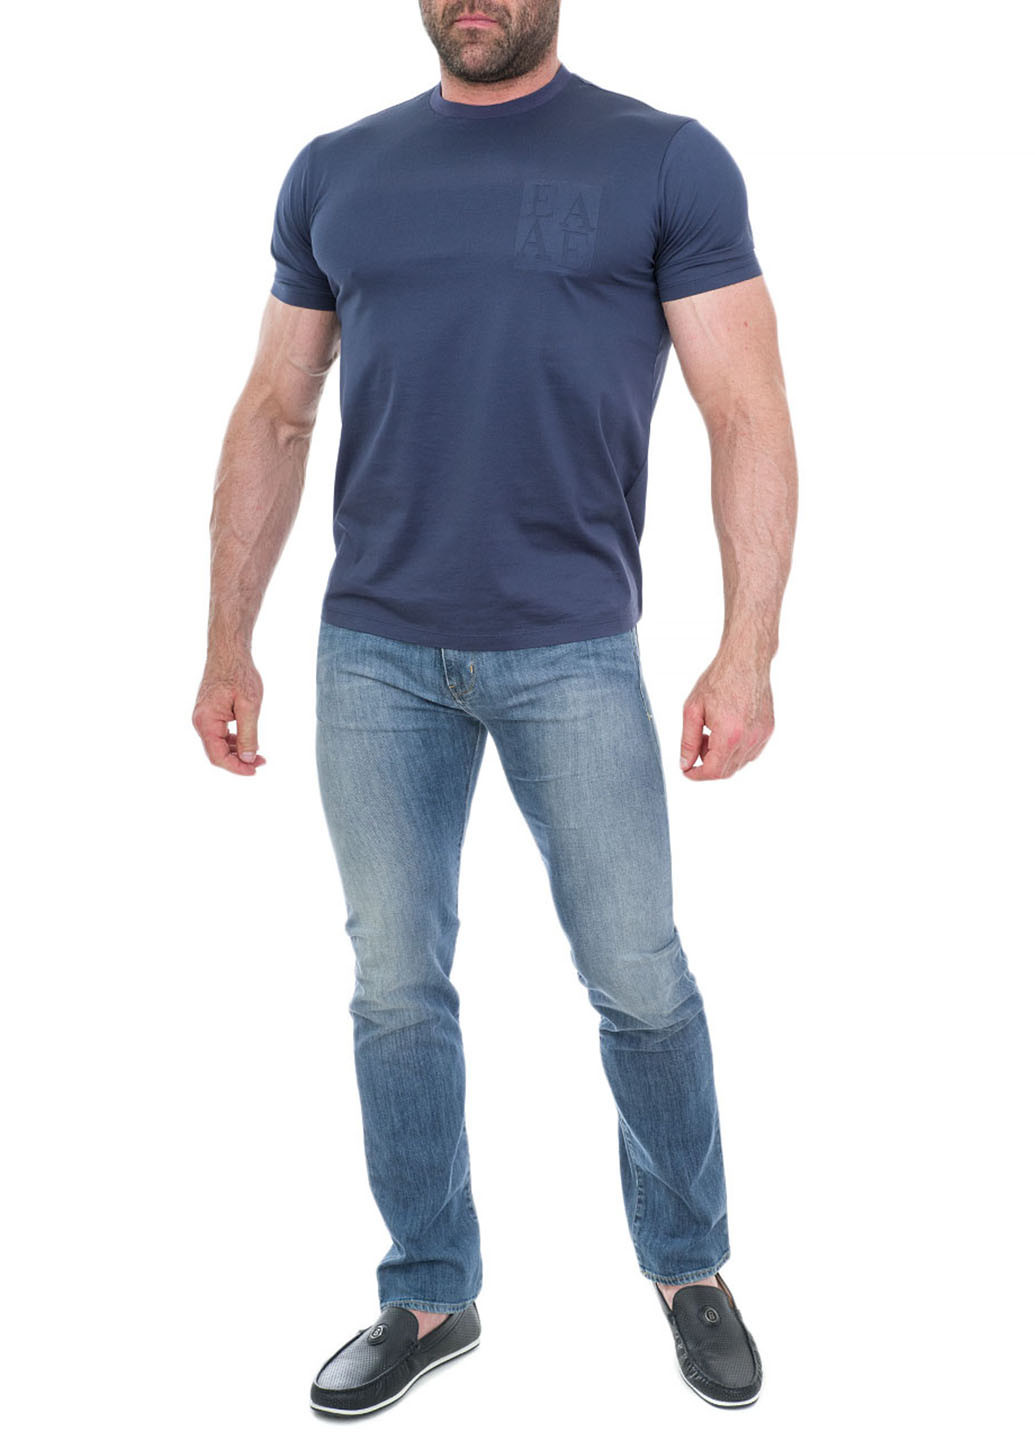 Синие демисезонные джинсы Armani Jeans